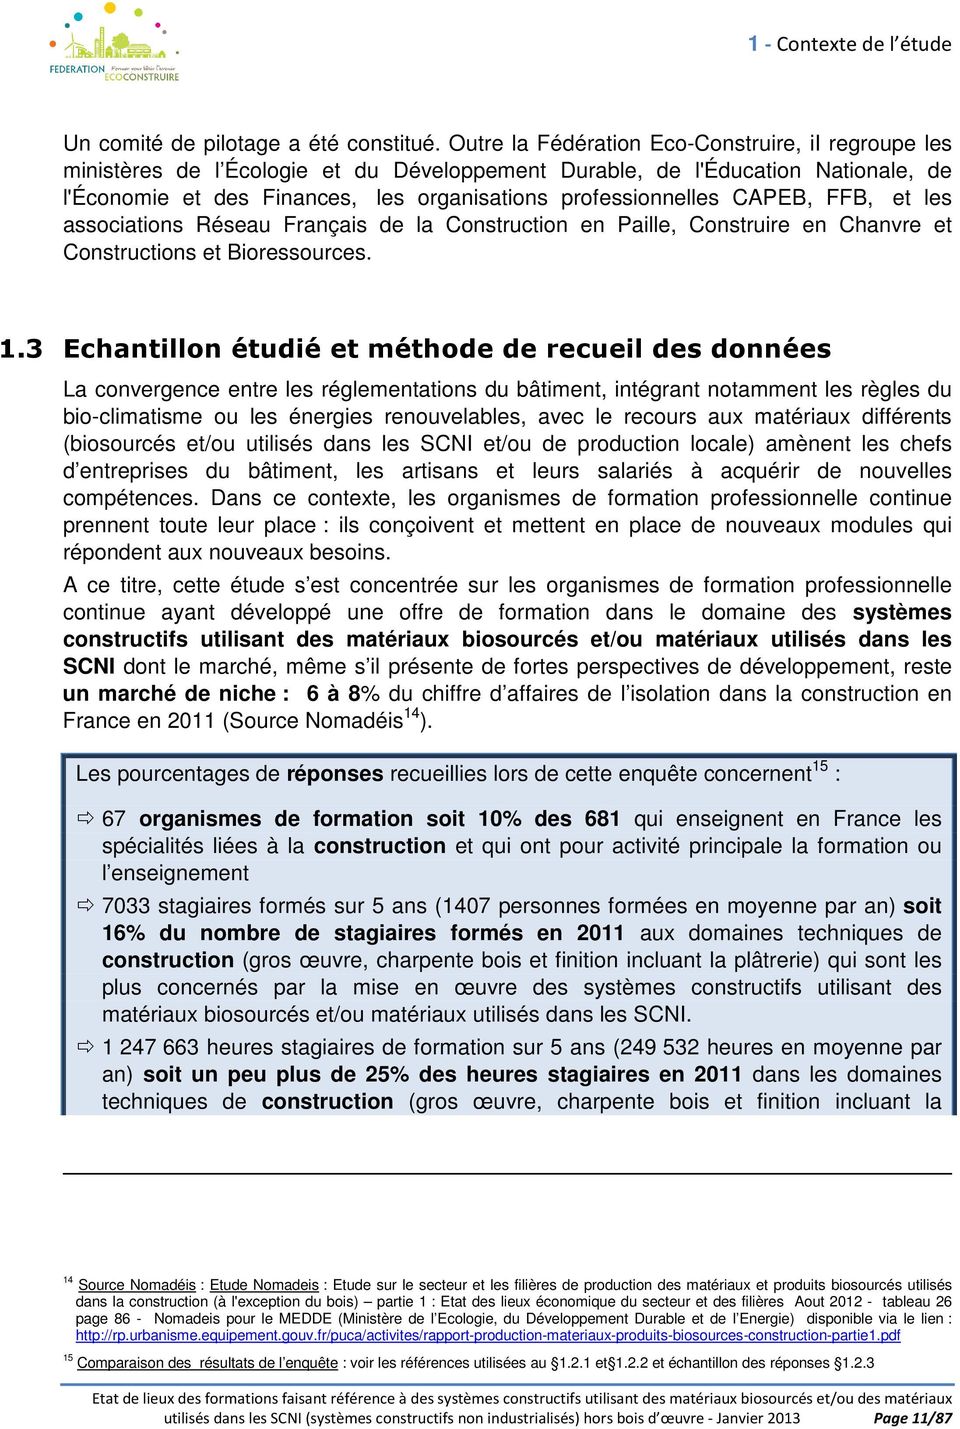 CAPEB, FFB, et les associations Réseau Français de la Construction en Paille, Construire en Chanvre et Constructions et Bioressources. 1.